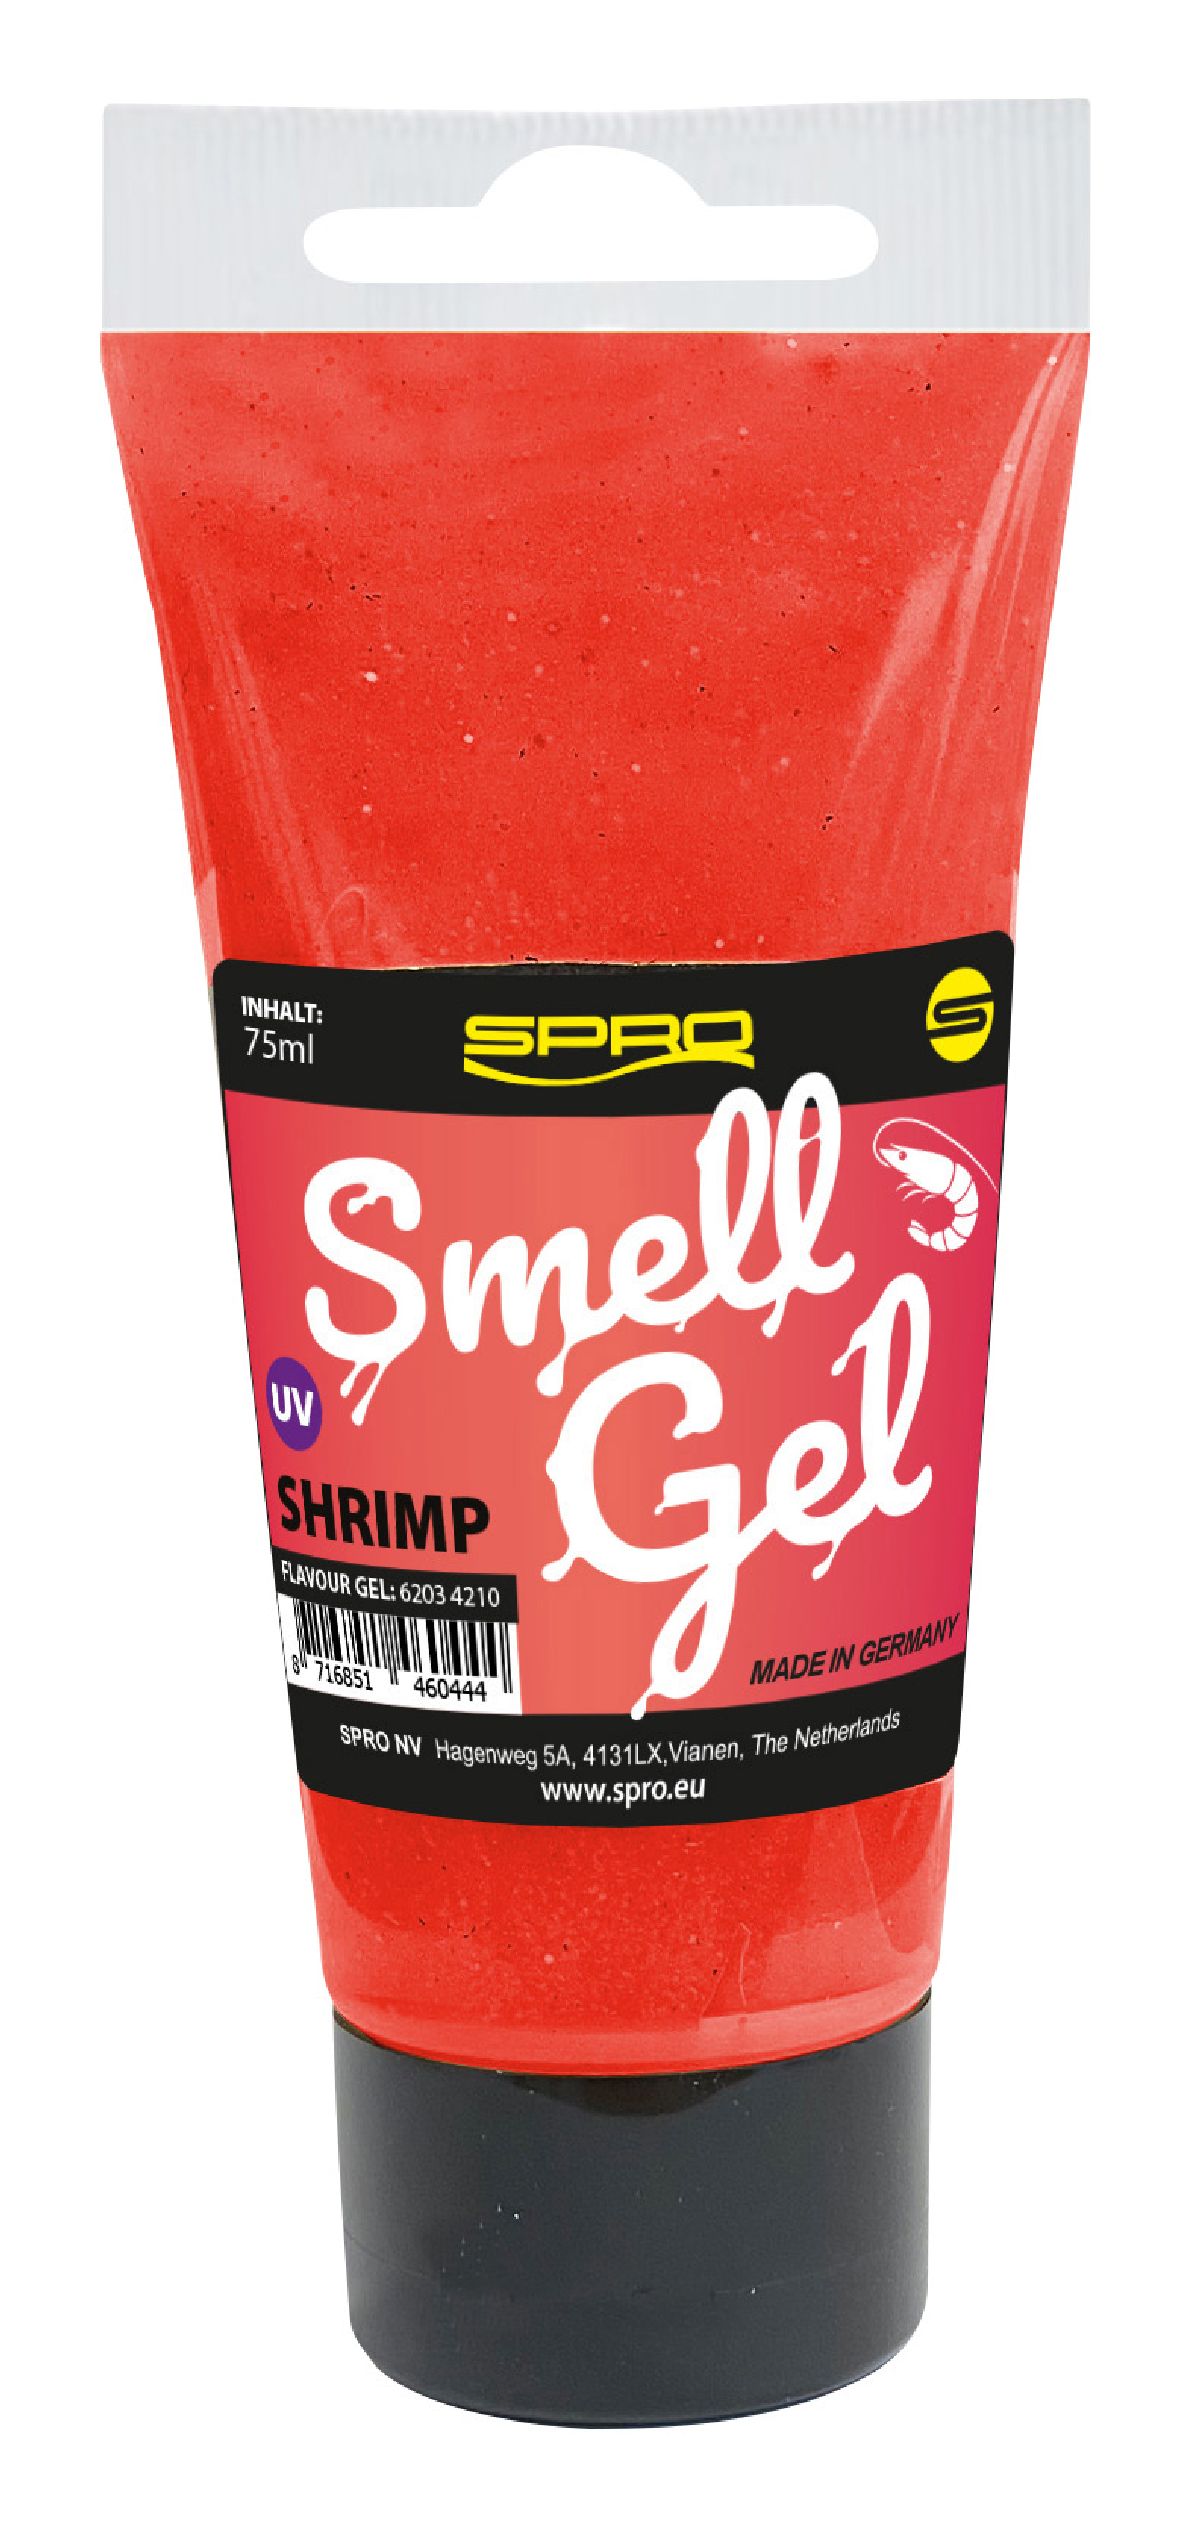 Spro Smell Gel 75ML Shrimp UV